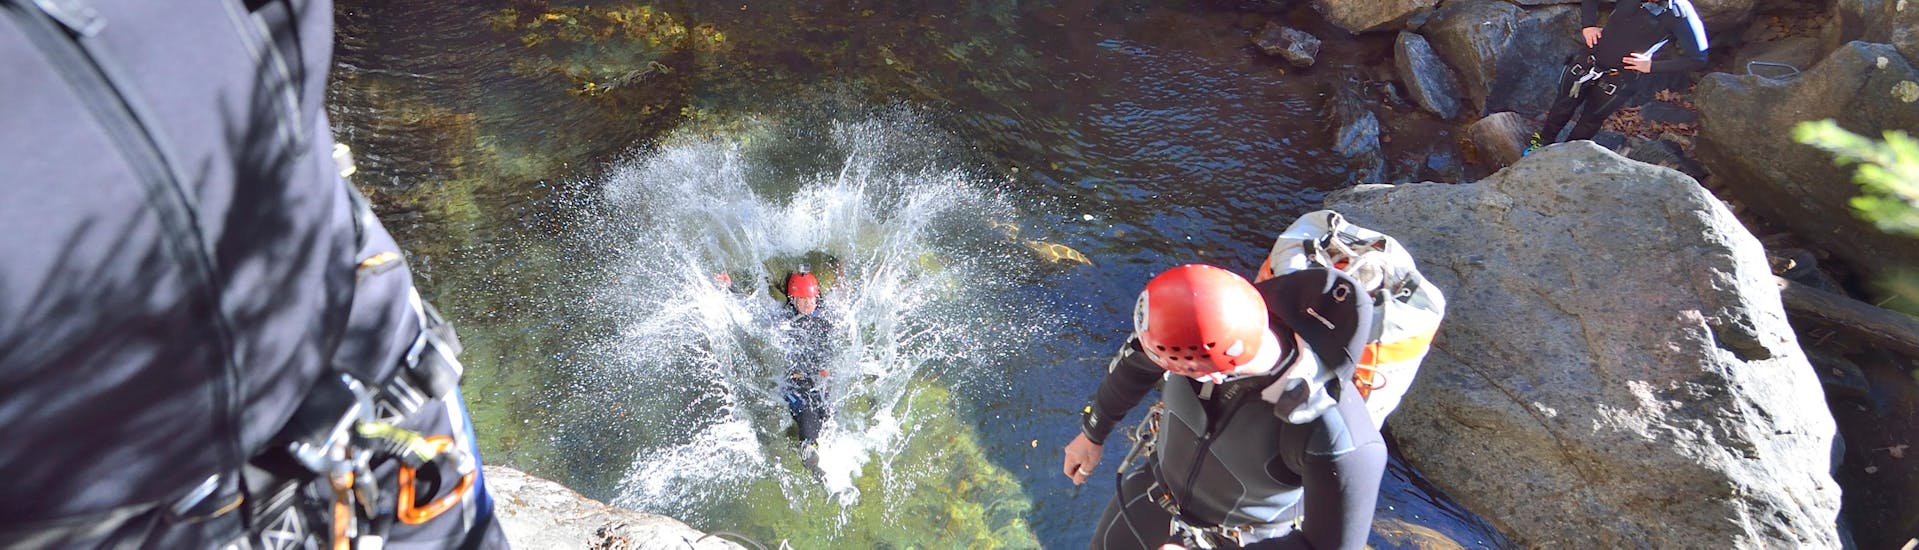 Een vrouw landt in het water tijdens Canyoning bij Ried im Oberinntal - Pure Actie met H2O Adventure Ried.